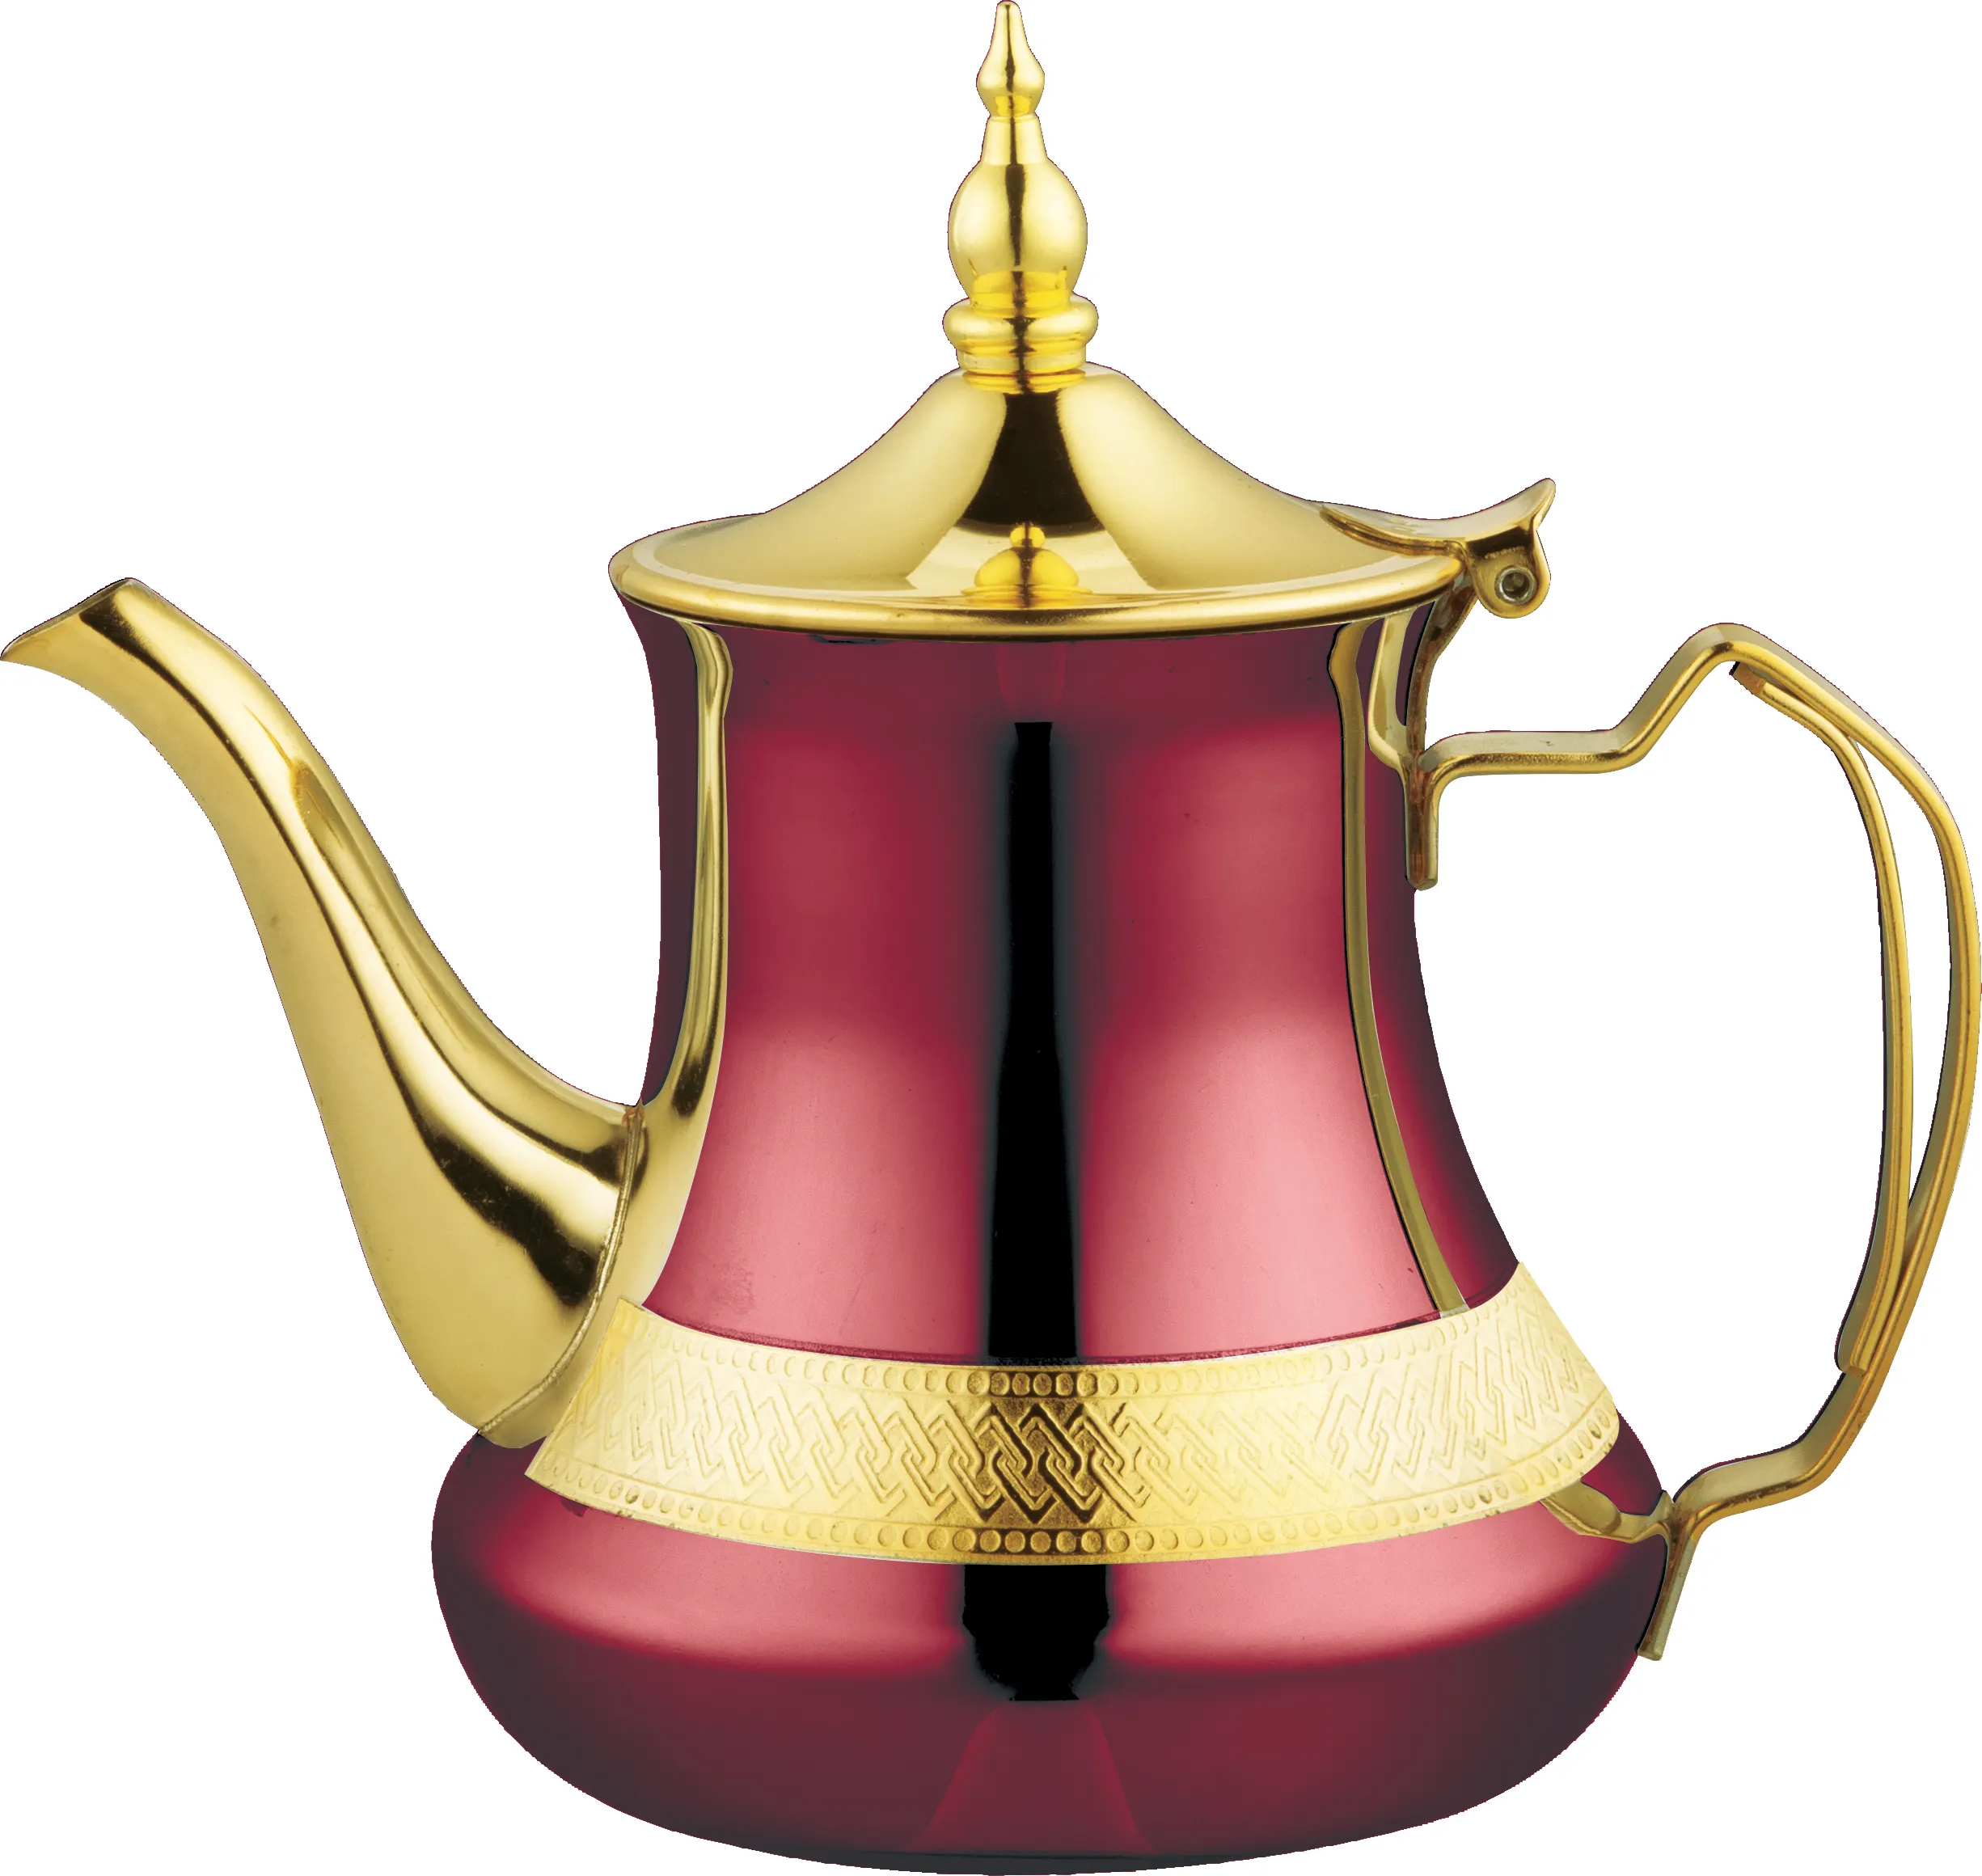 Théière en or en acier inoxydable décoration cafetière arabe turc maroc bouilloire avec poignée